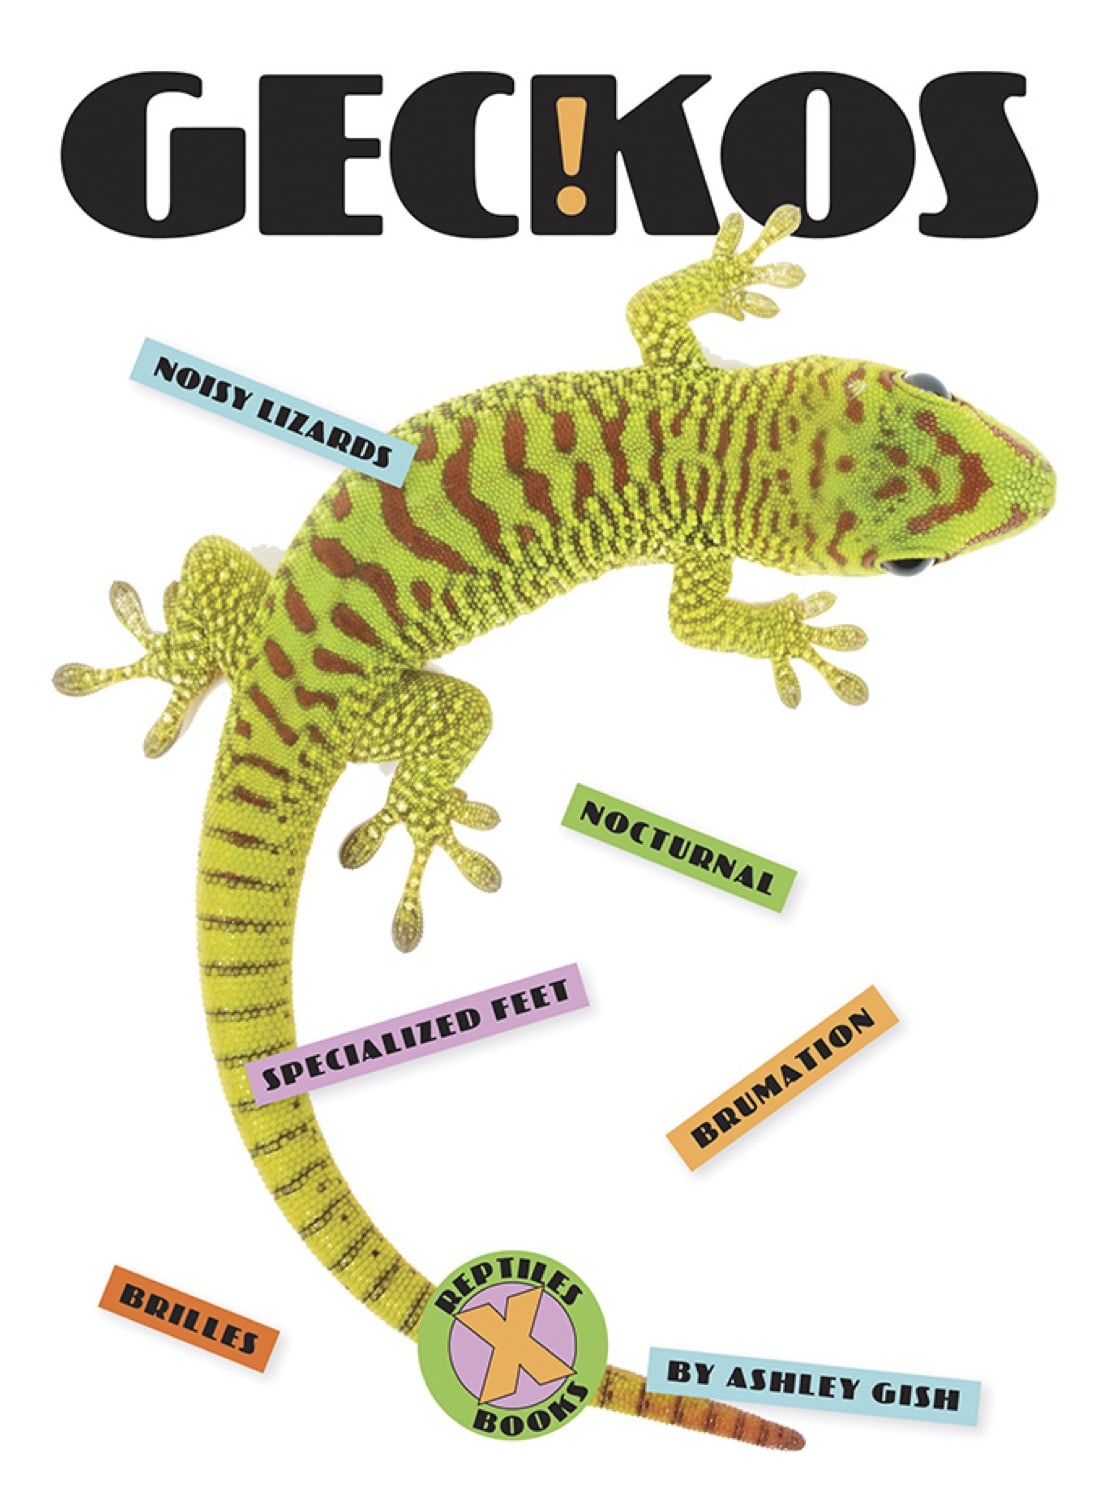 X-Books: Reptilien: Geckos